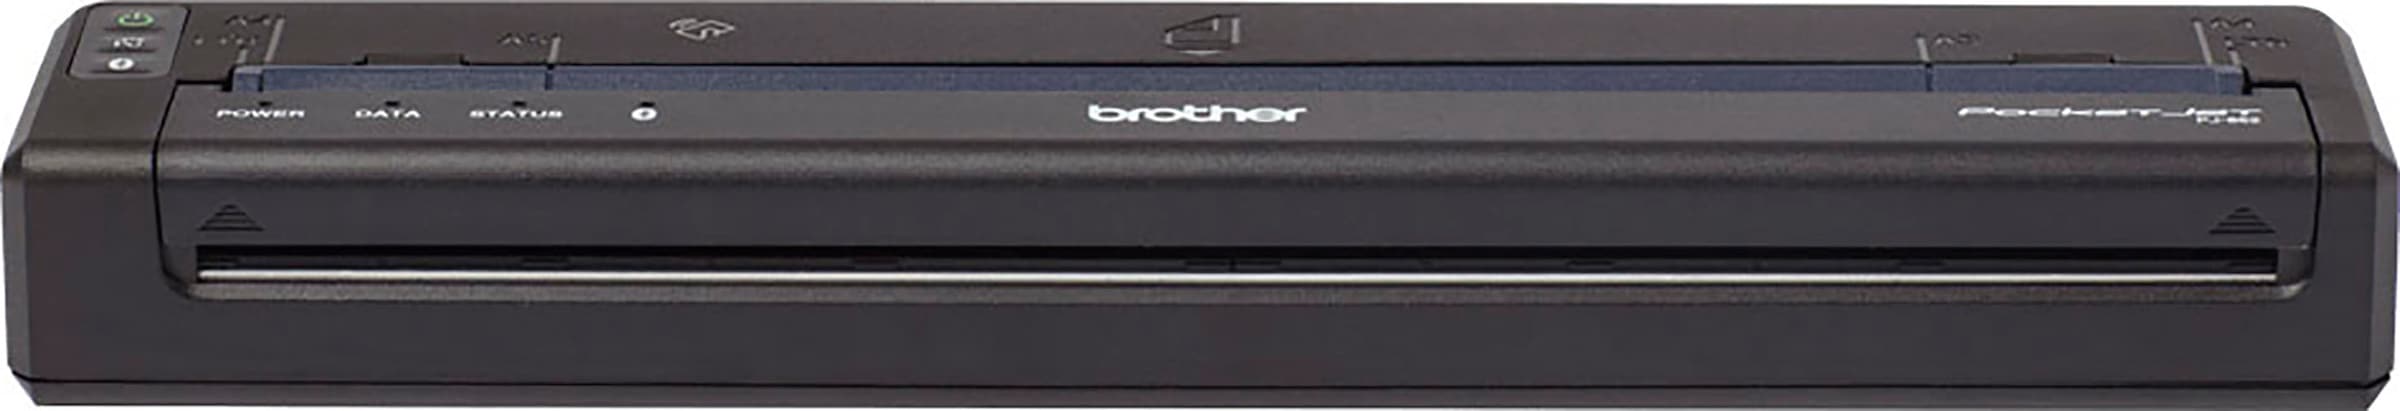 Schwarz-Weiß Laserdrucker »PJ-862«, Thermodrucker